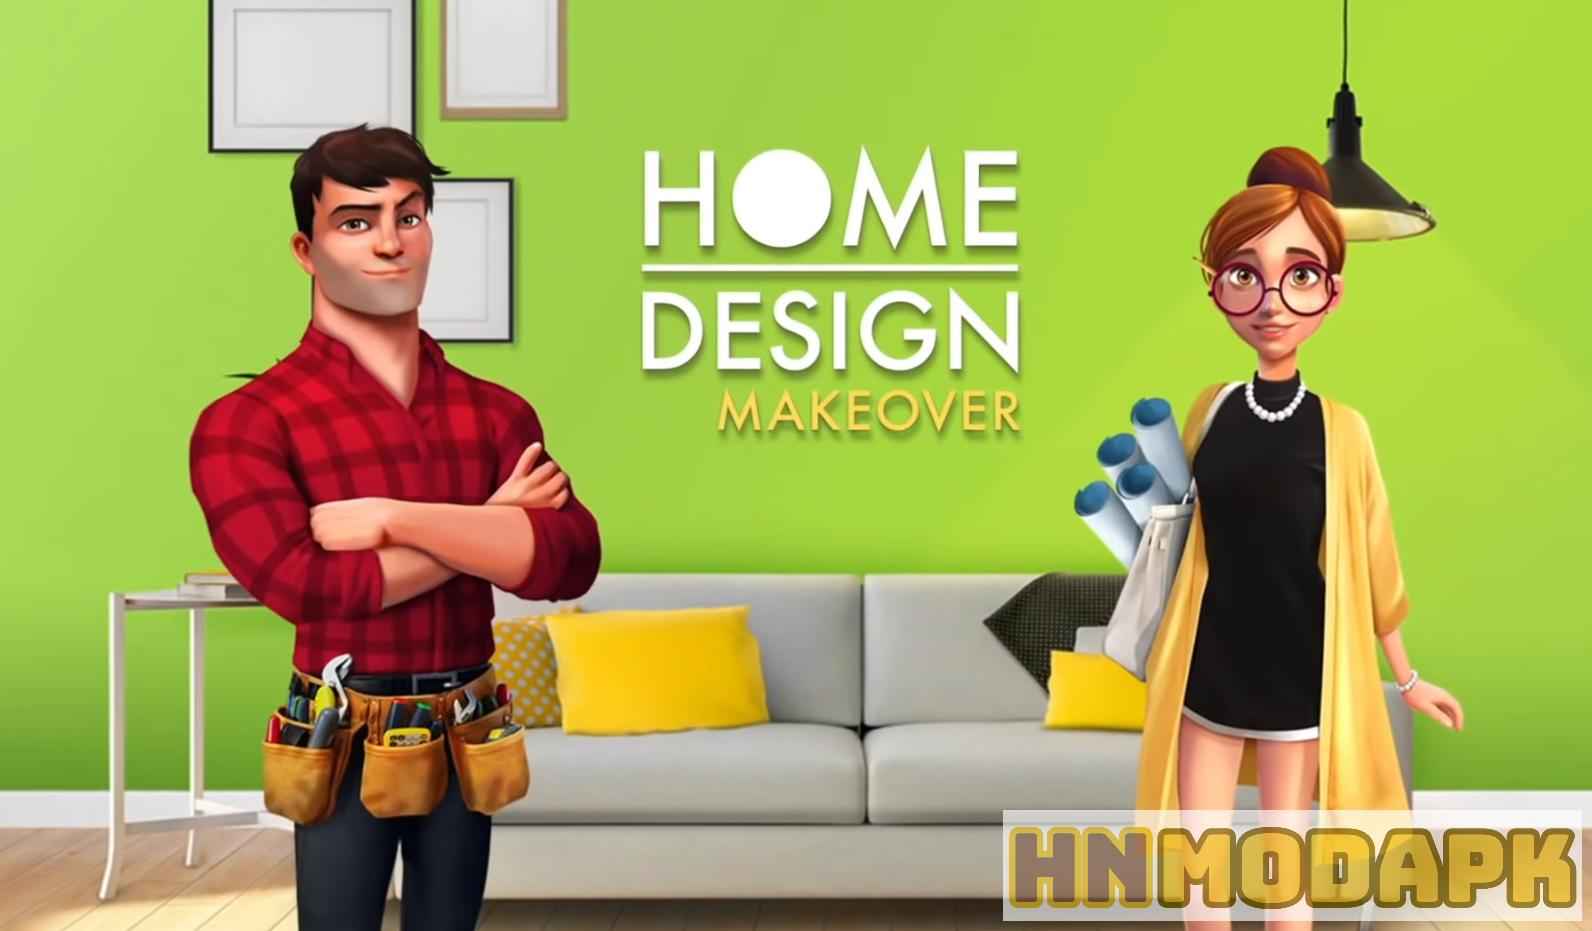 Home Design Makeover MOD (Menu Pro, Tiền Full, Vàng Full, Nhiều Năng Lượng) APK 5.9.5g